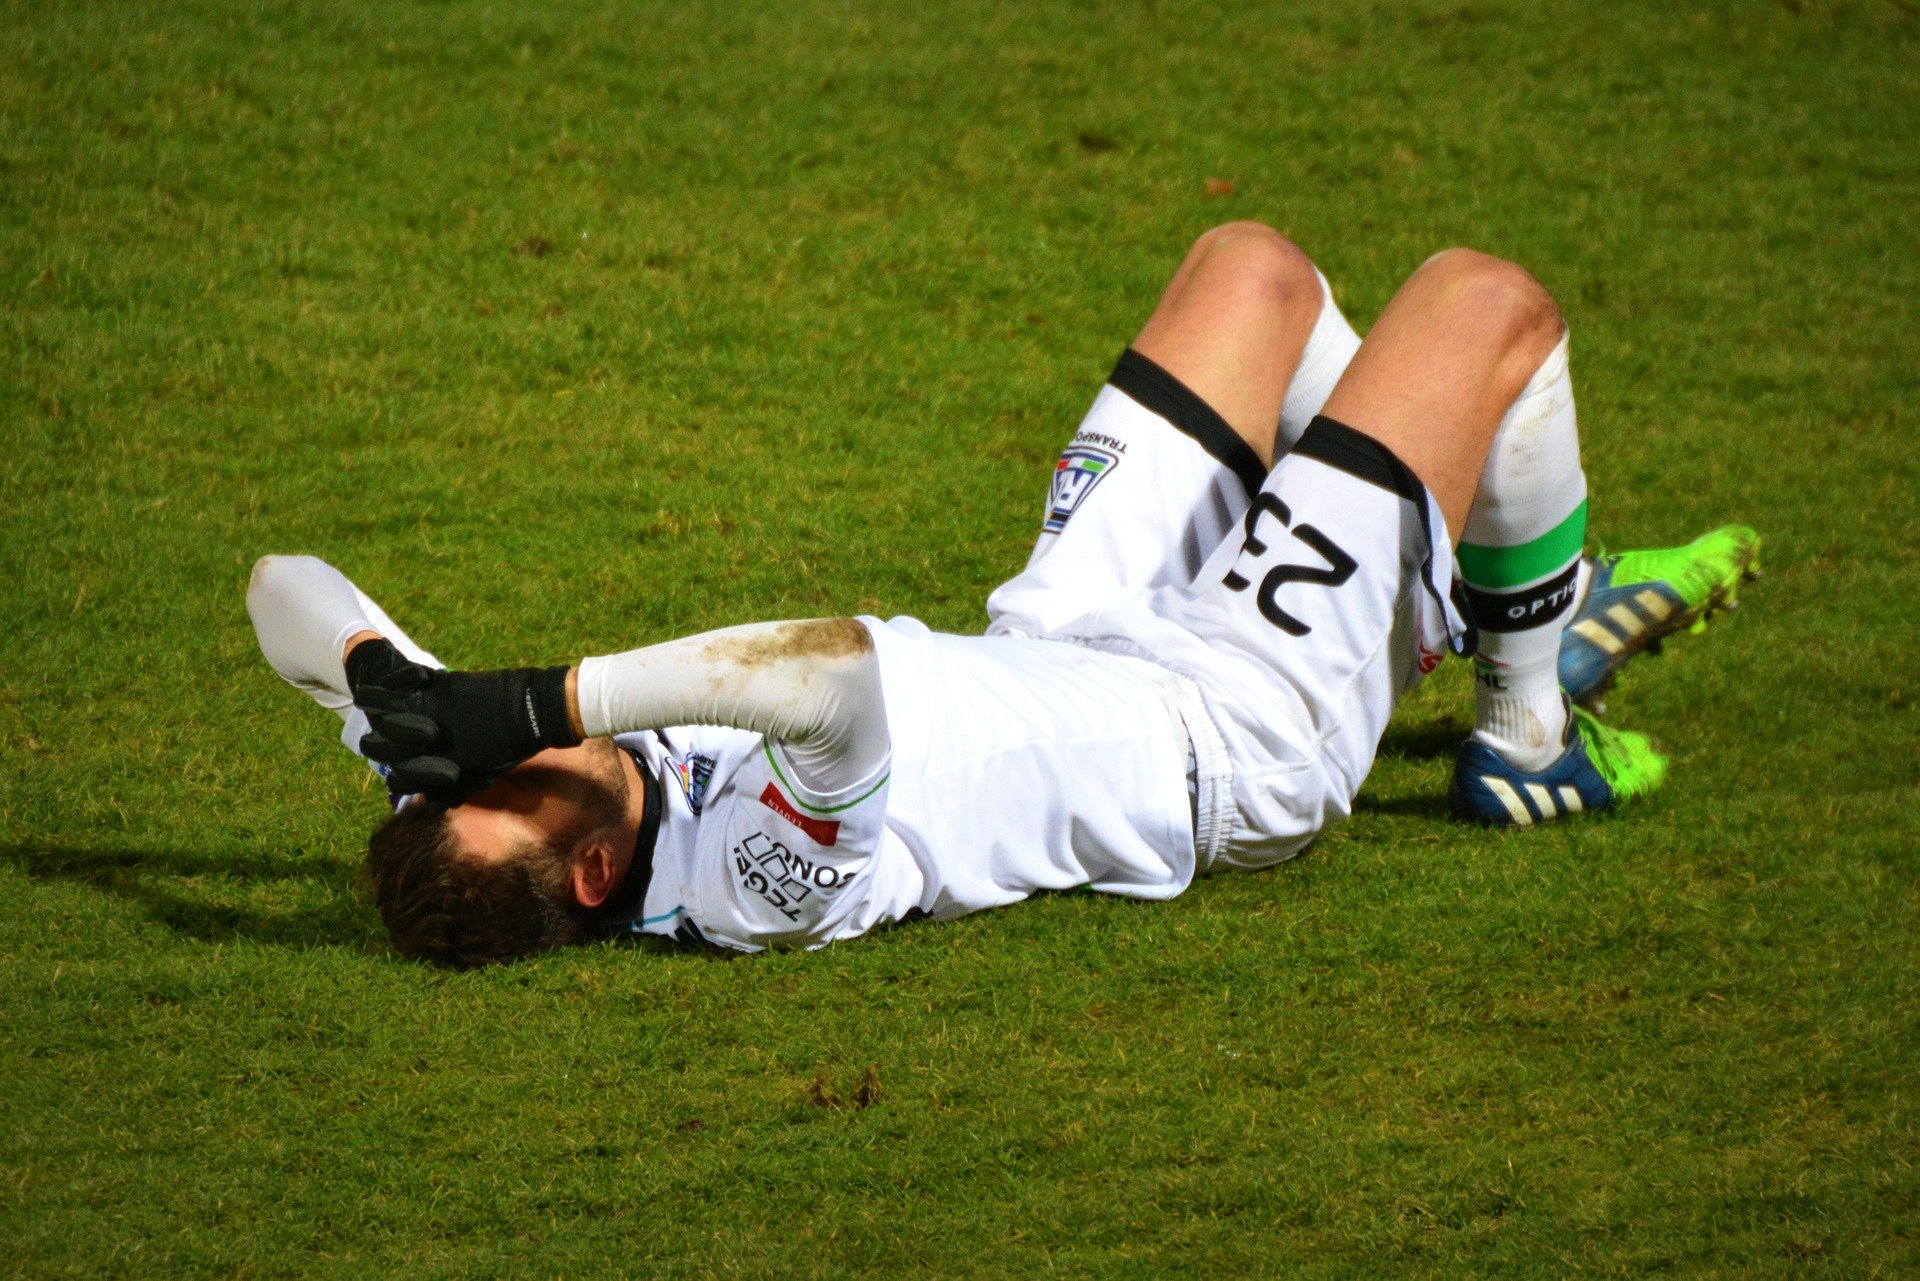 מניעת פציעות:השפעת תרגיל הנורדיק על שריר הירך האחורי בקרב שחקני כדורגל צעירים